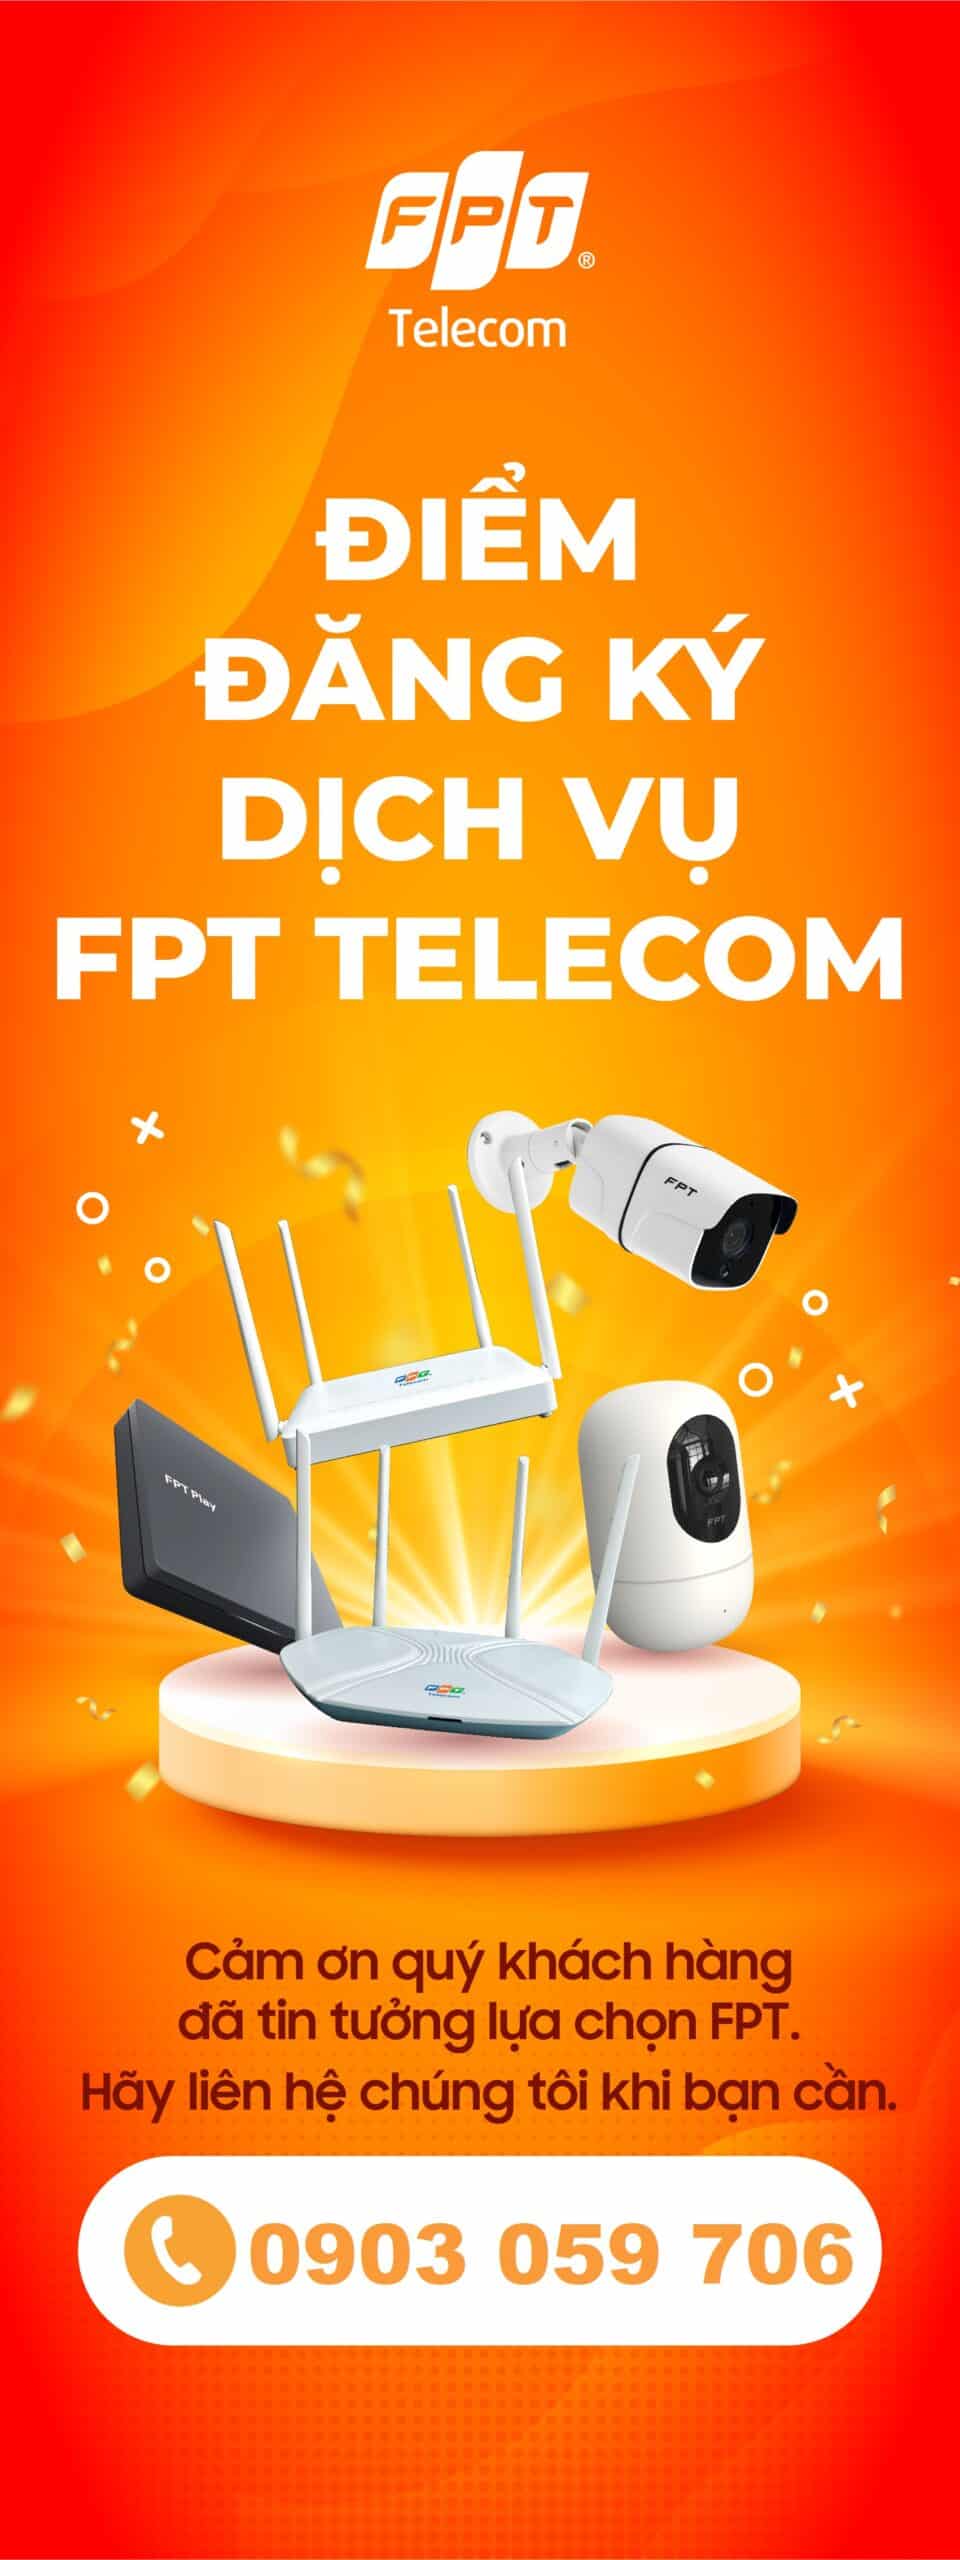 Điểm đăng ký dịch vụ FPT: Internet, Truyền hình, Camera